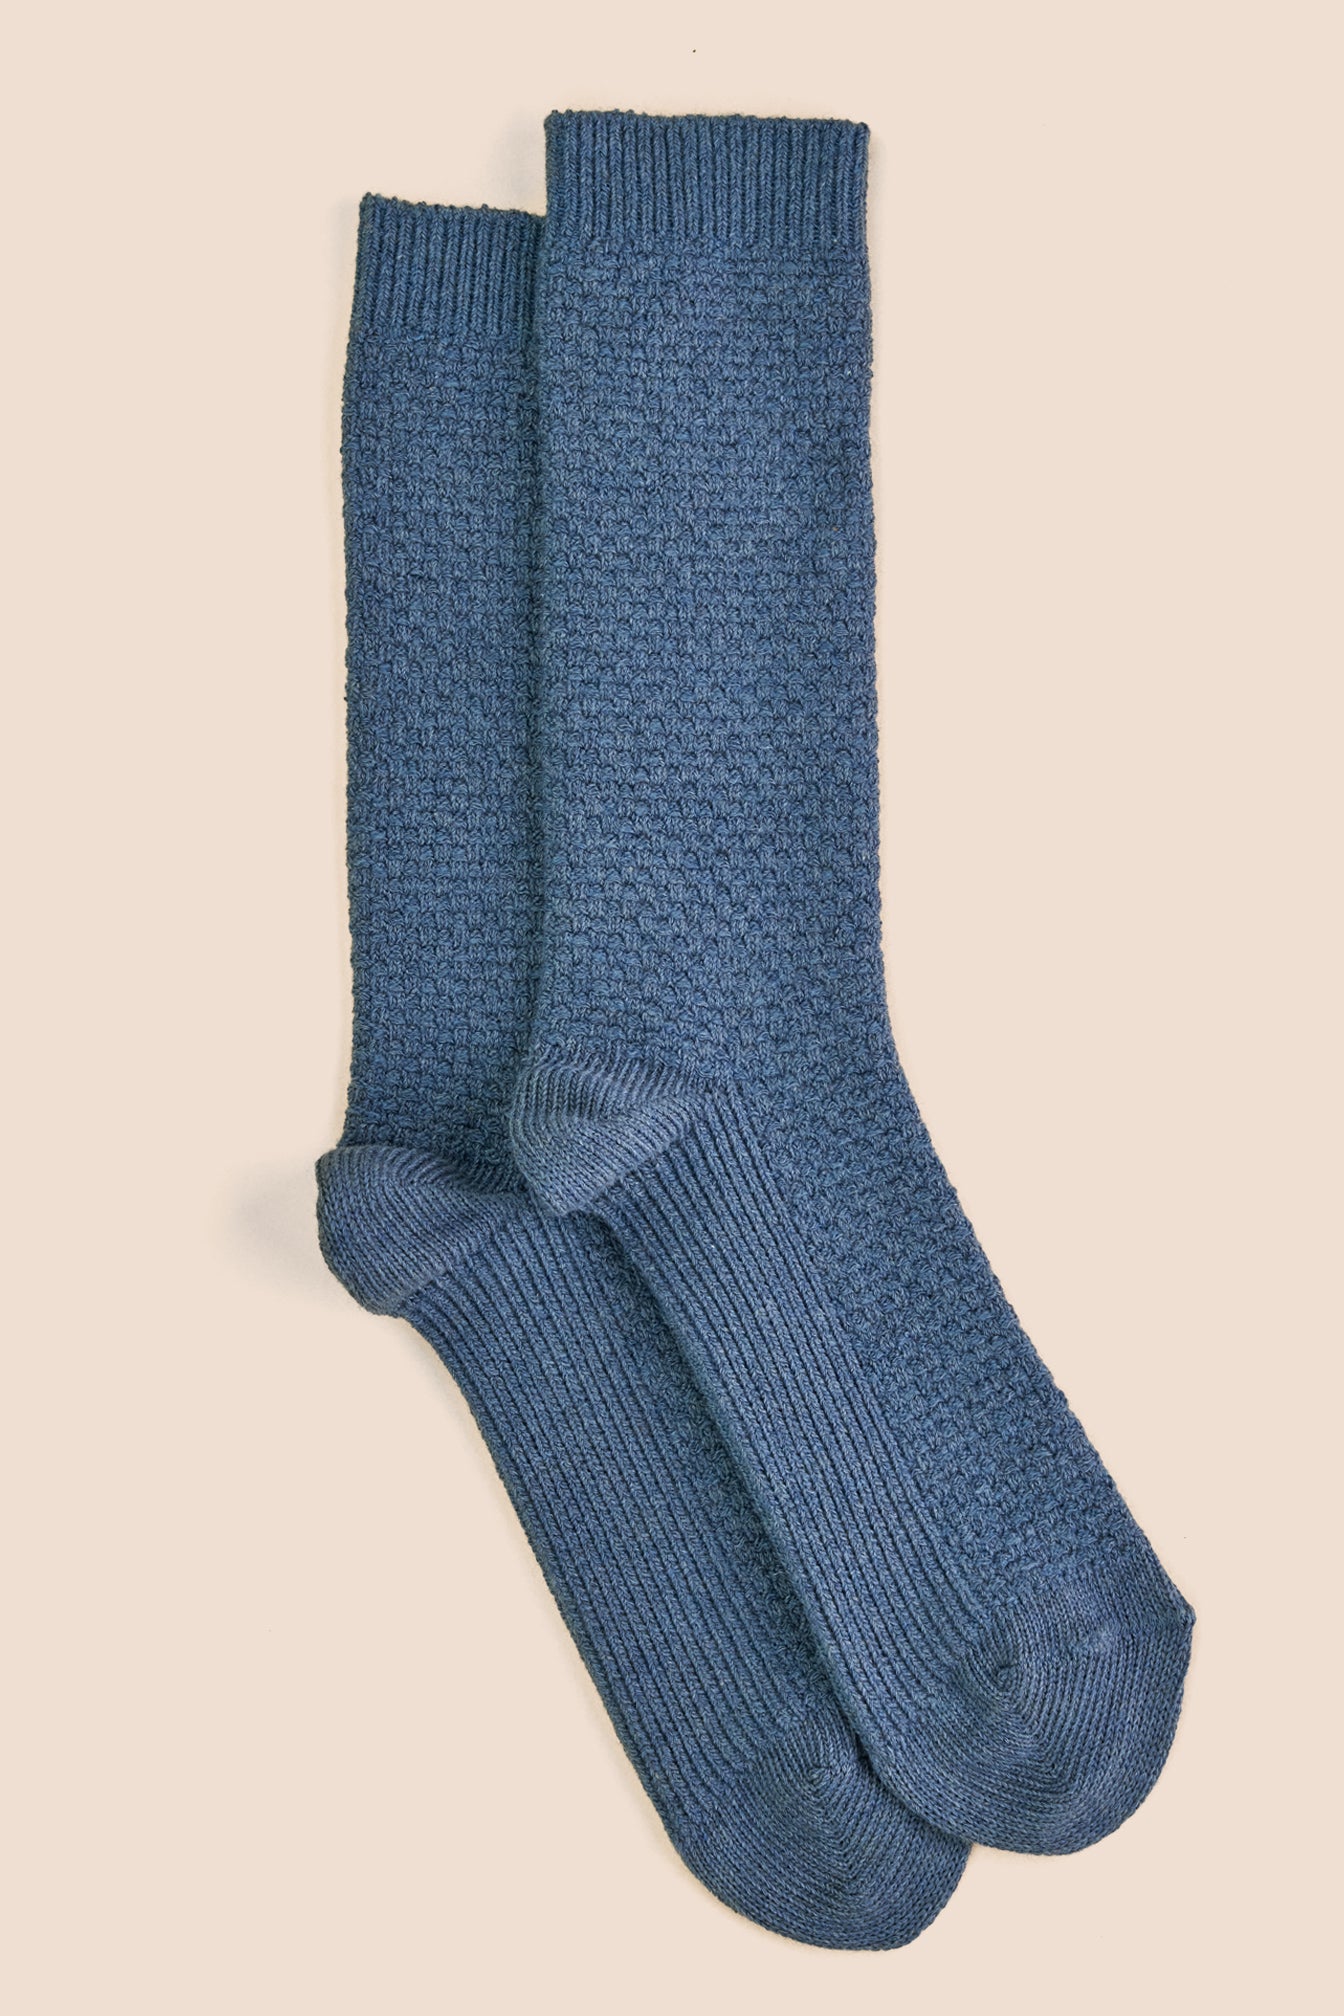 Chaussettes chaudes en laine mérinos homme - Pétrone